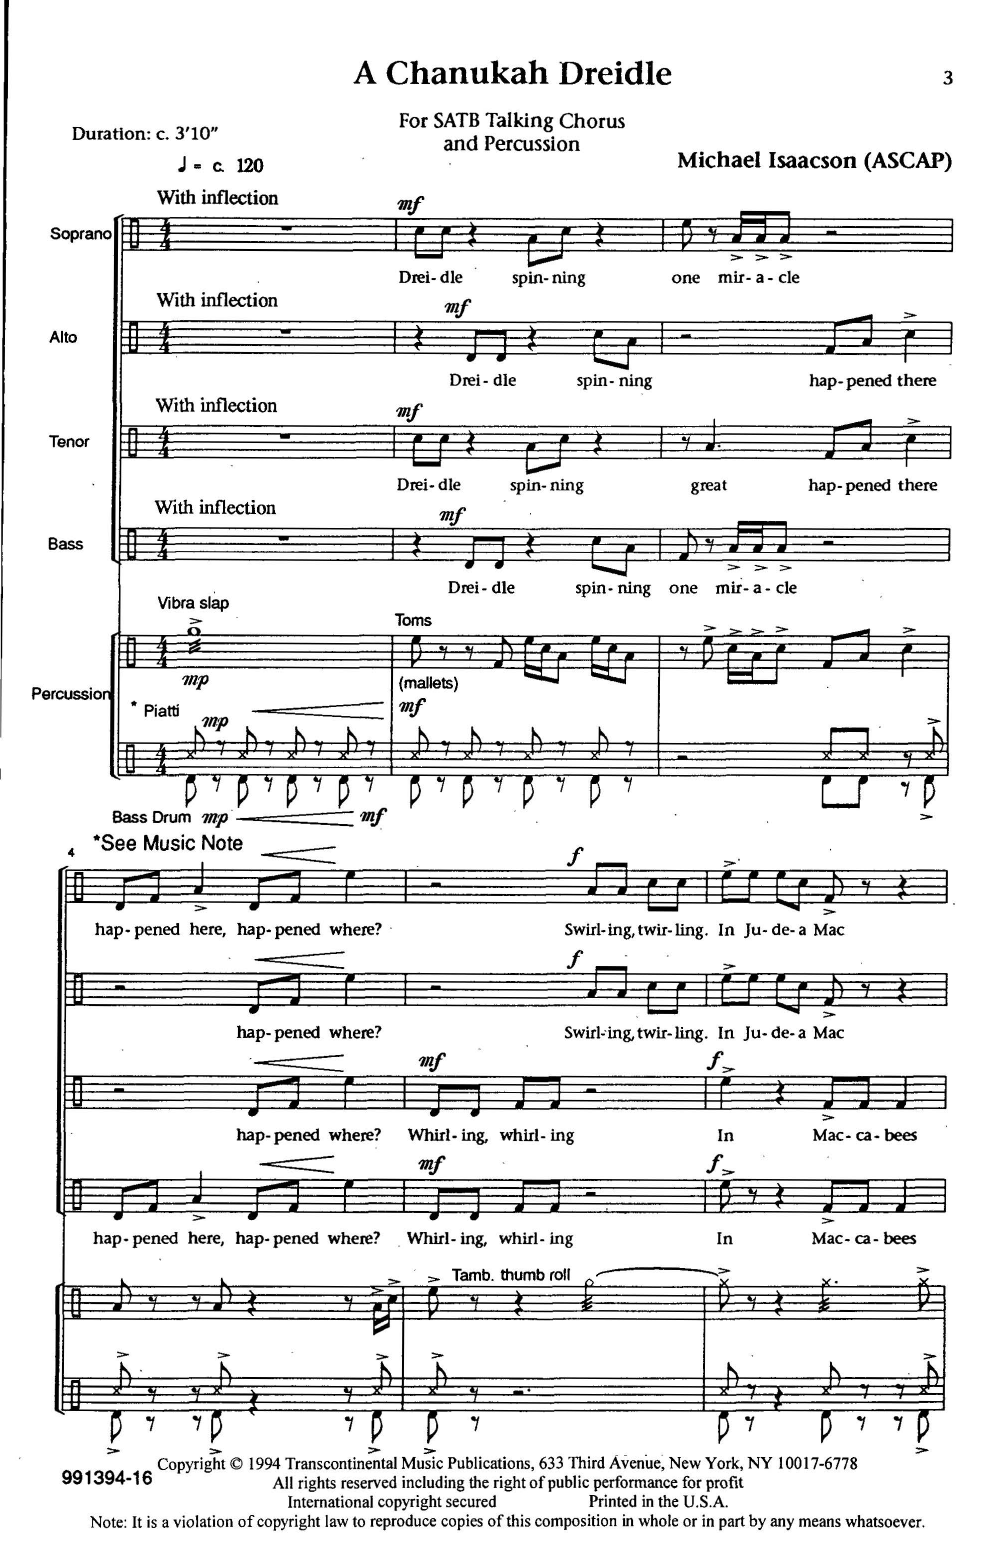 Michael Isaacson A Chanukah Dreidle Sheet Music Notes & Chords for SATB Choir - Download or Print PDF